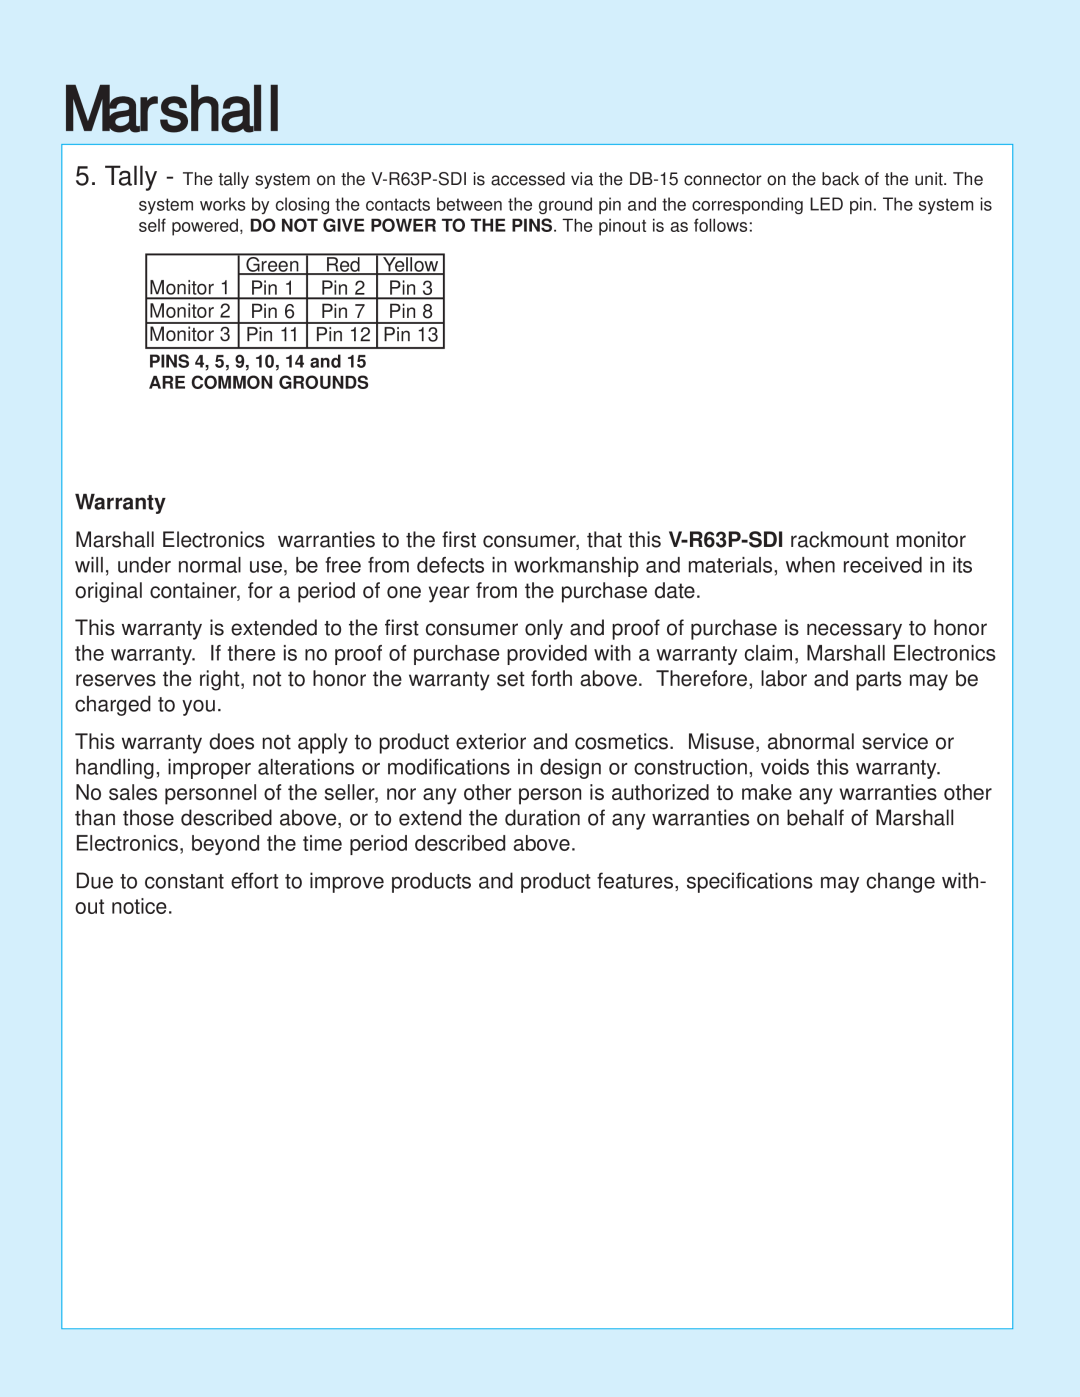 Marshall electronic V-R63P-SDI instruction sheet Marshall, Warranty 